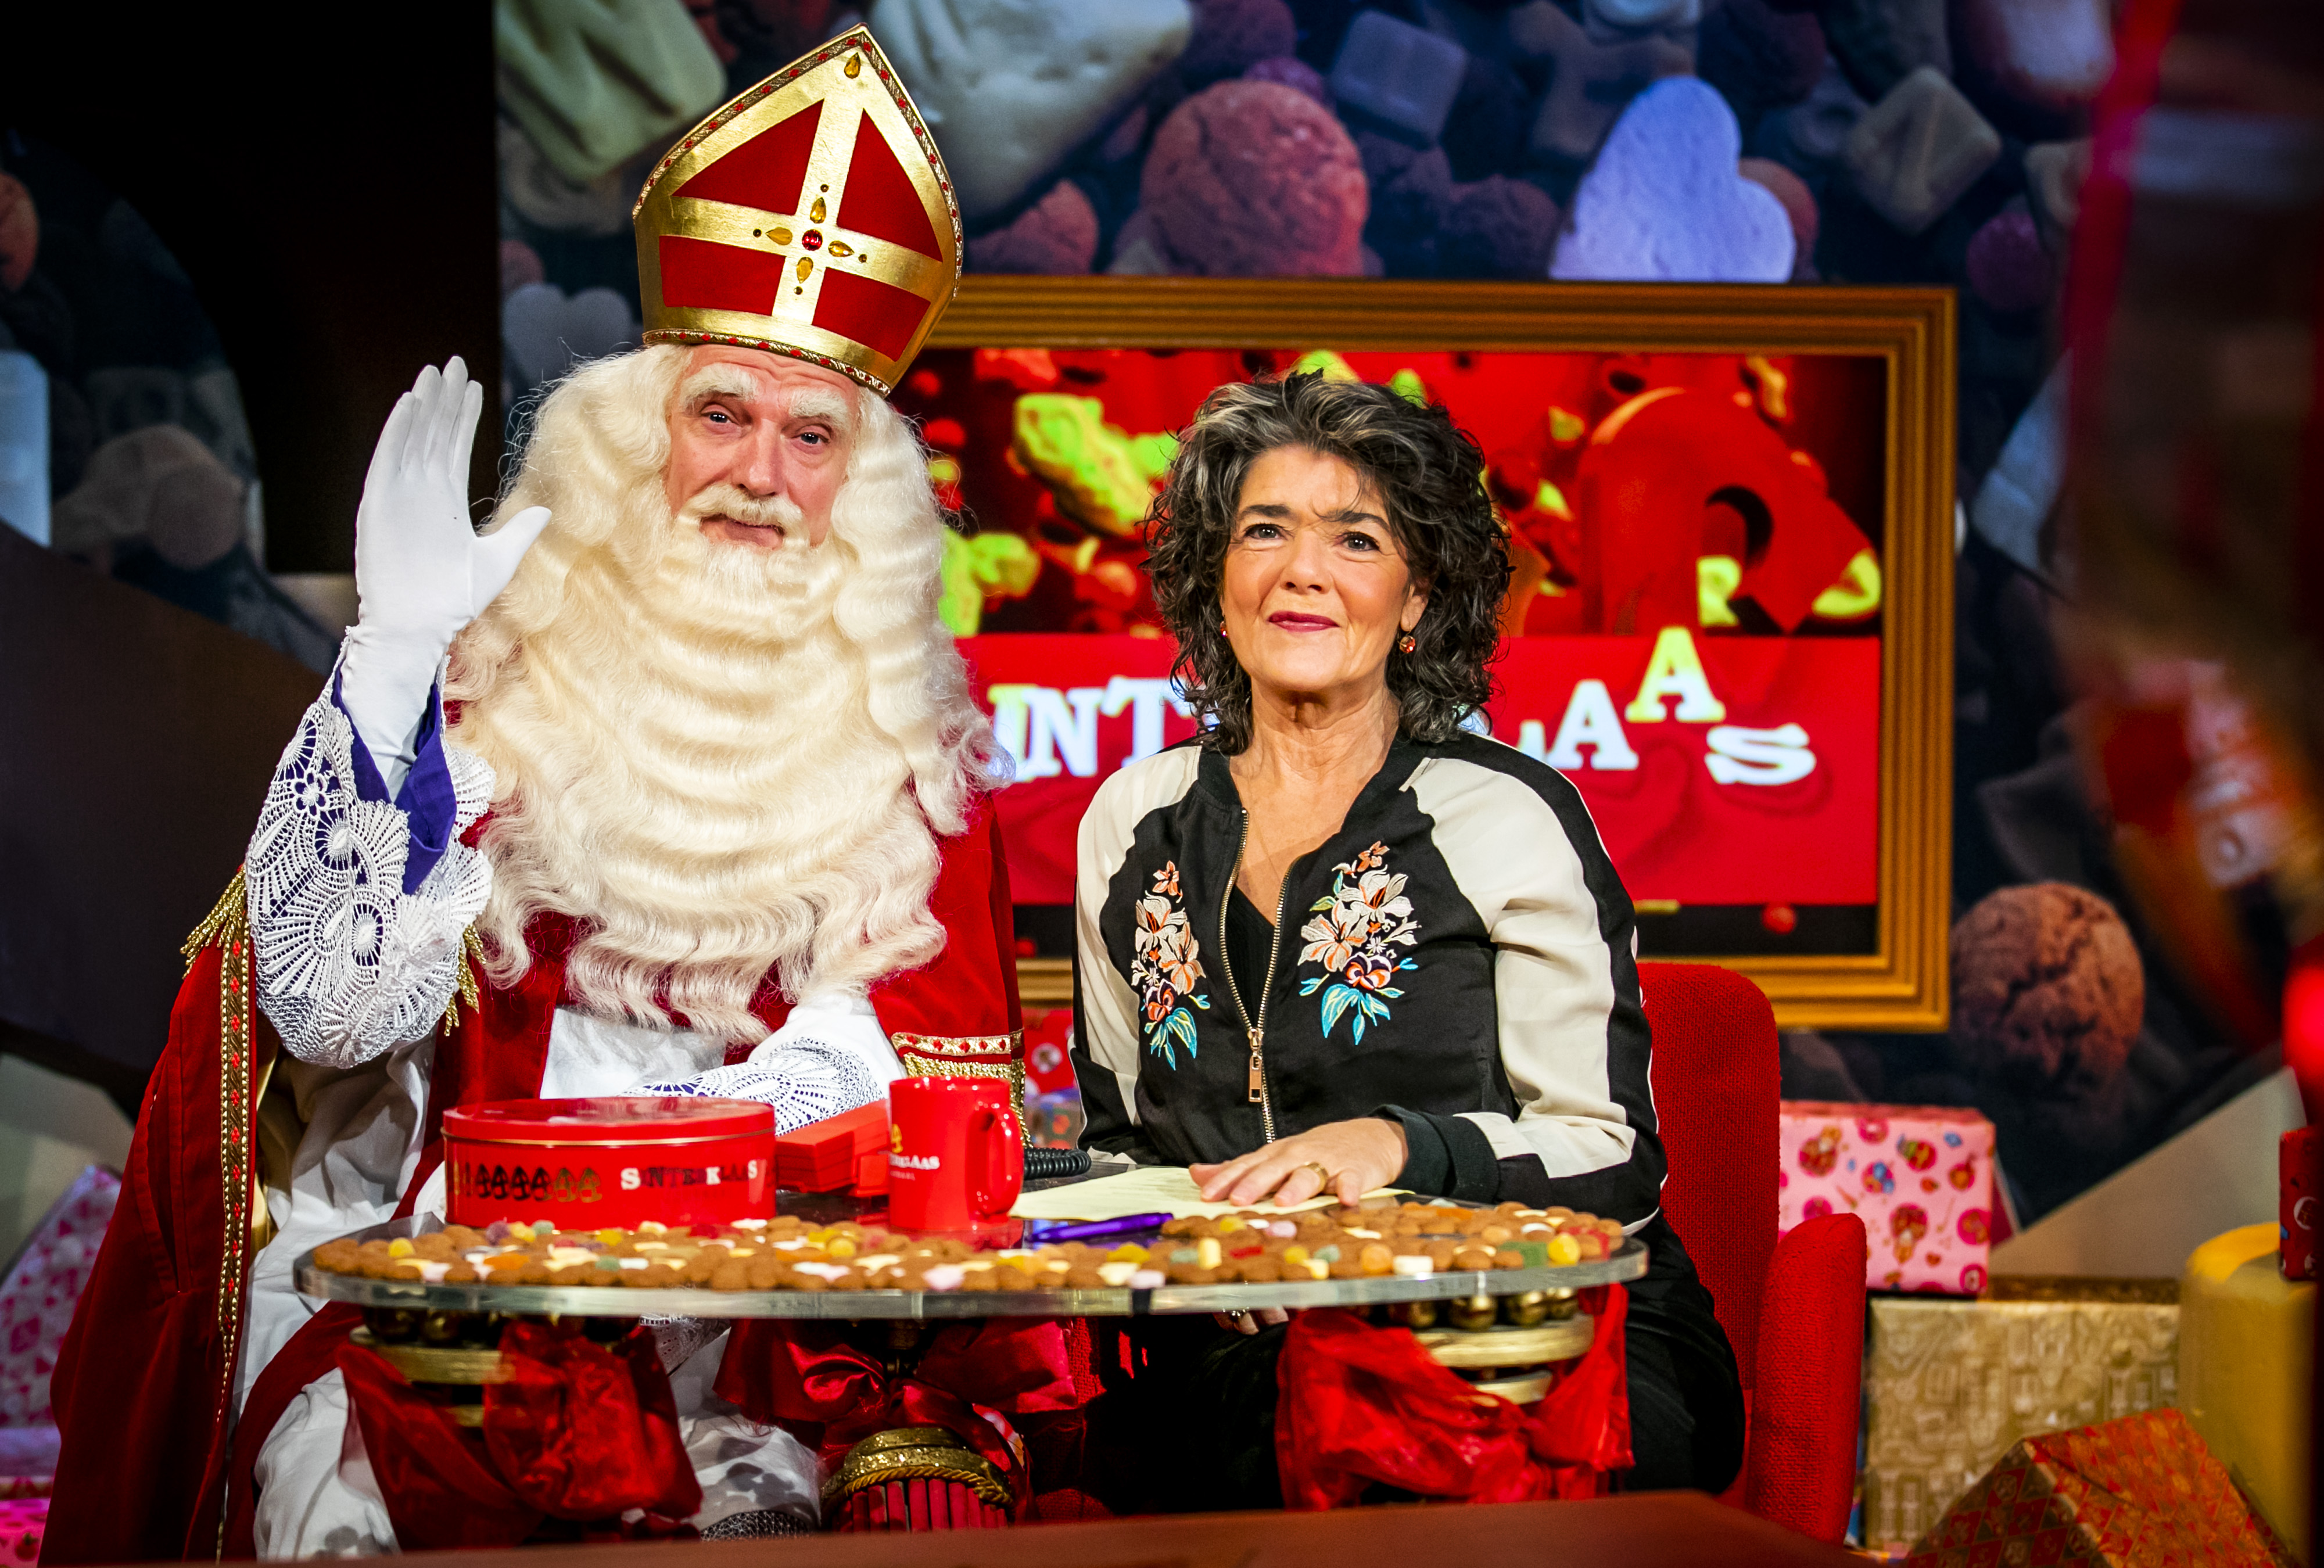 as Ingang Bereid Lippen over Sint-intocht en Sinterklaas-journaal stijf op elkaar gehouden